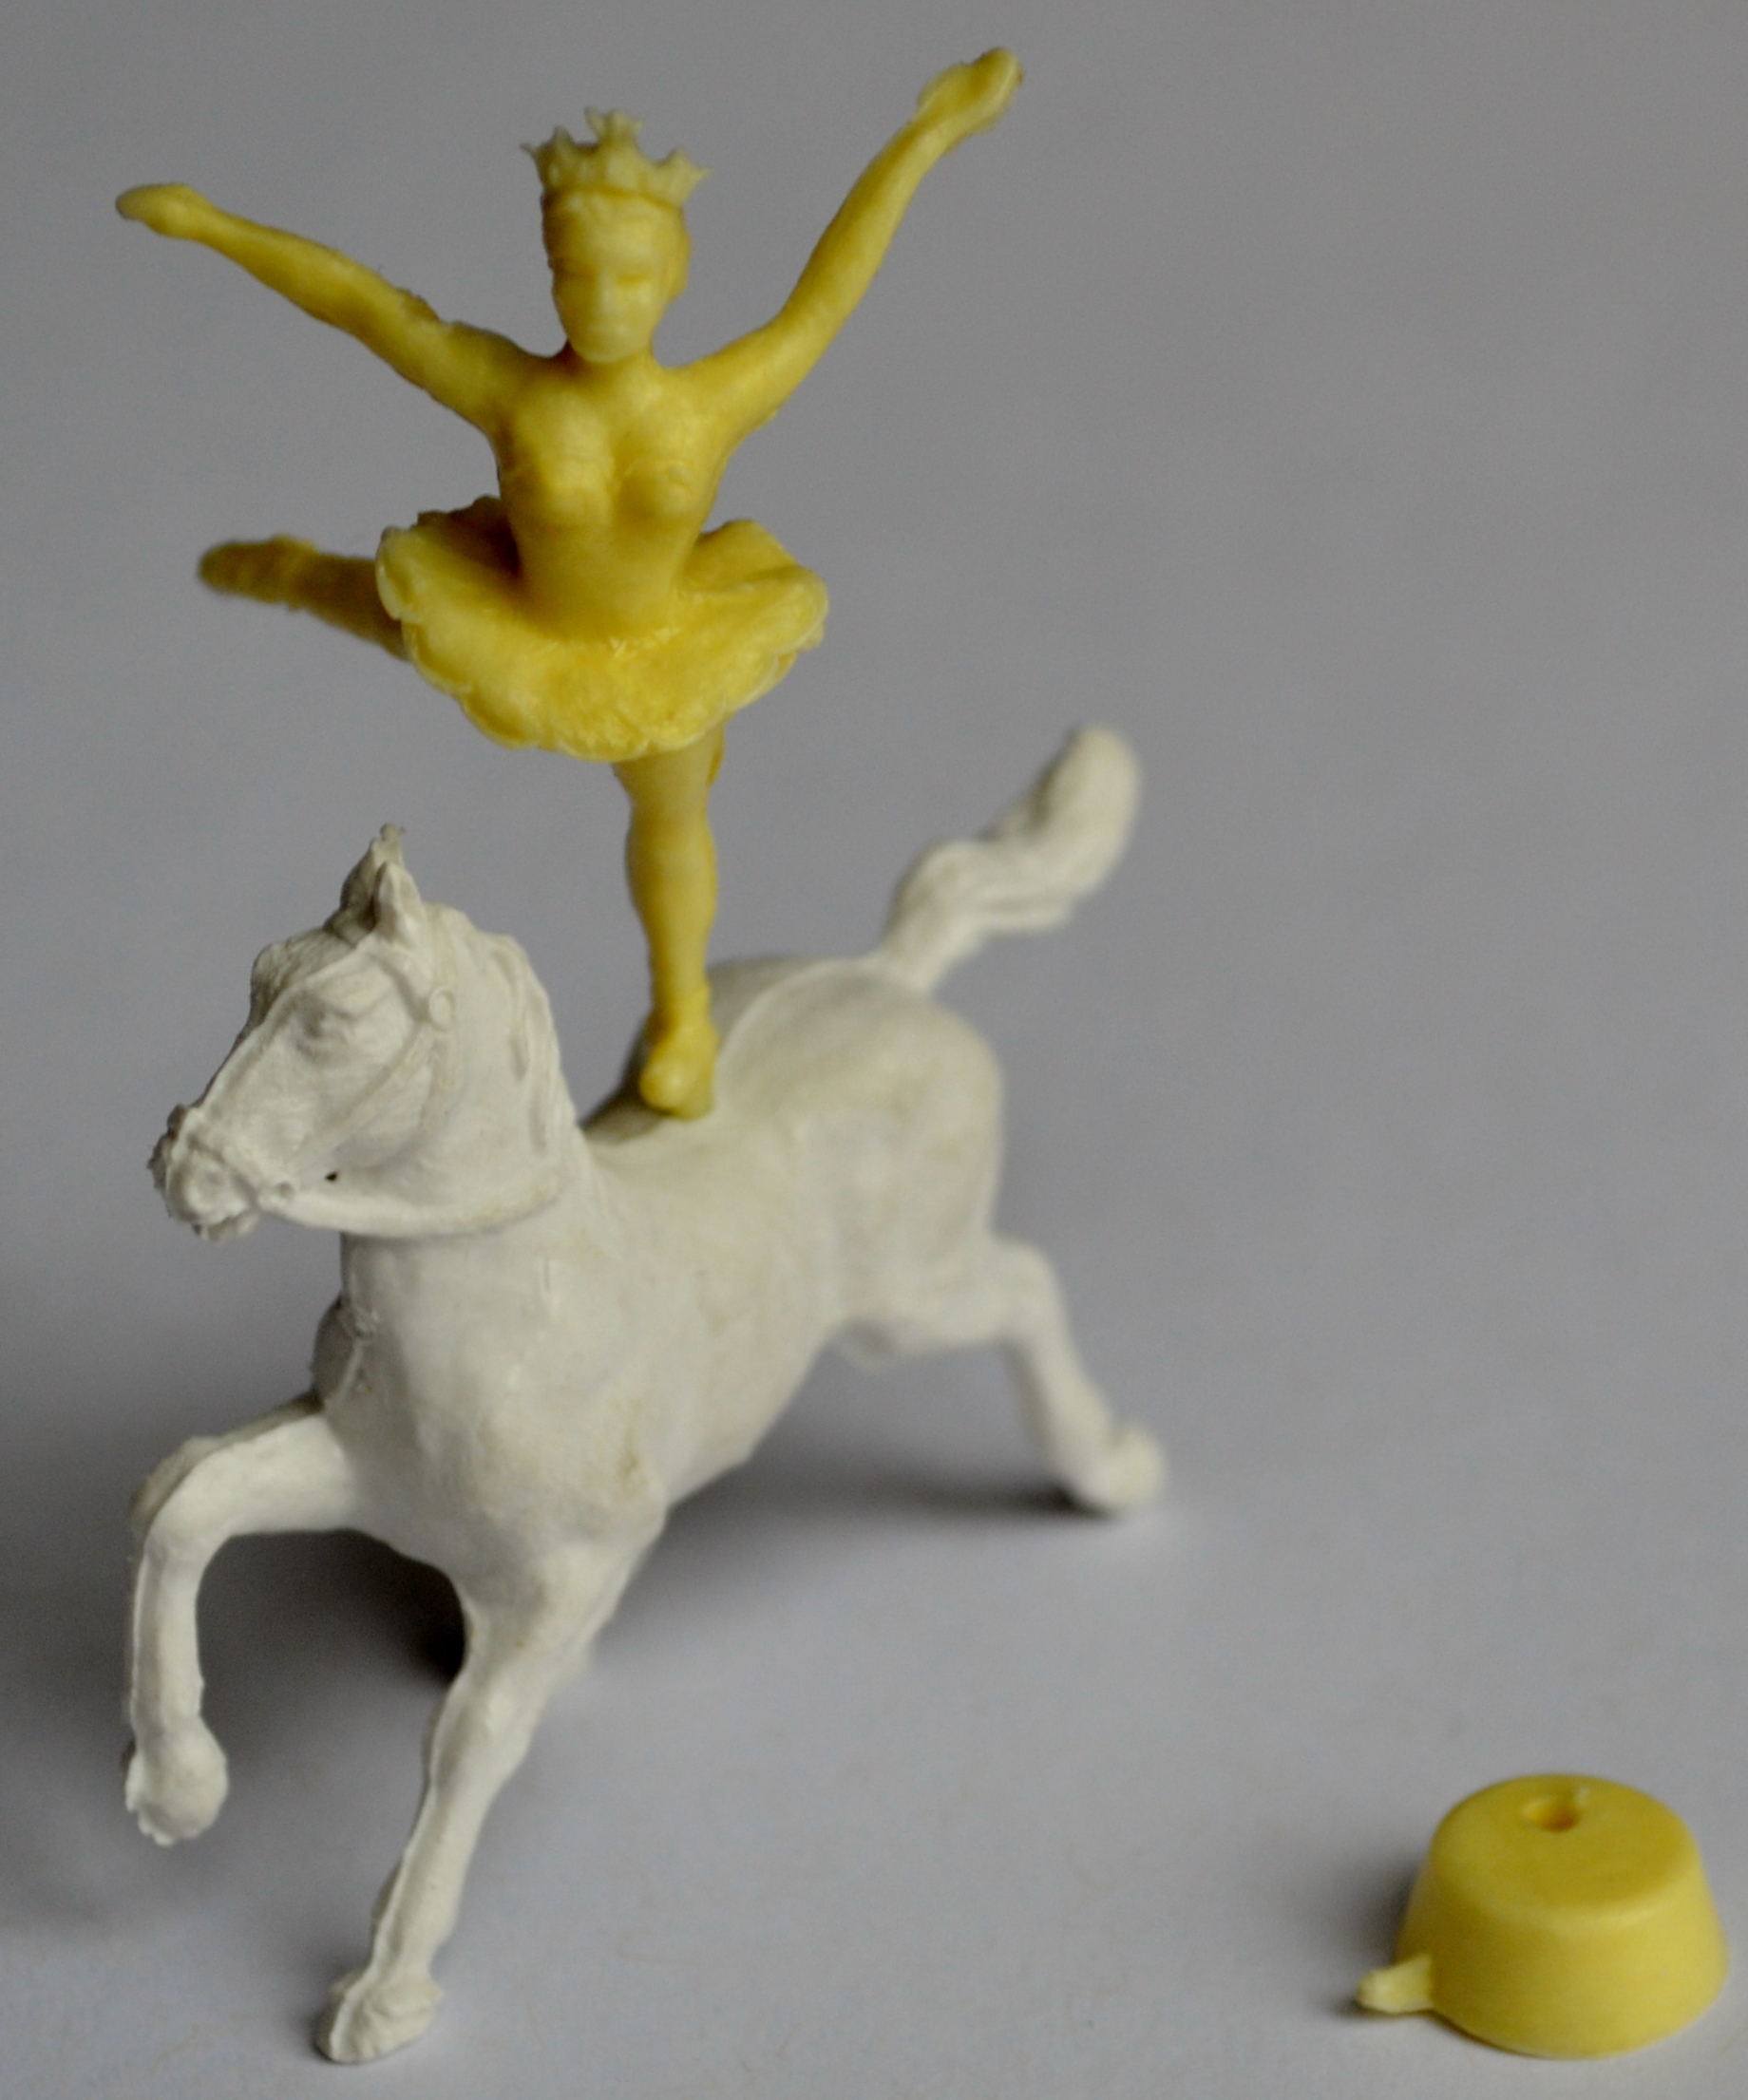 1959 Sugar Smacks Circus Figures Horse & ballerina